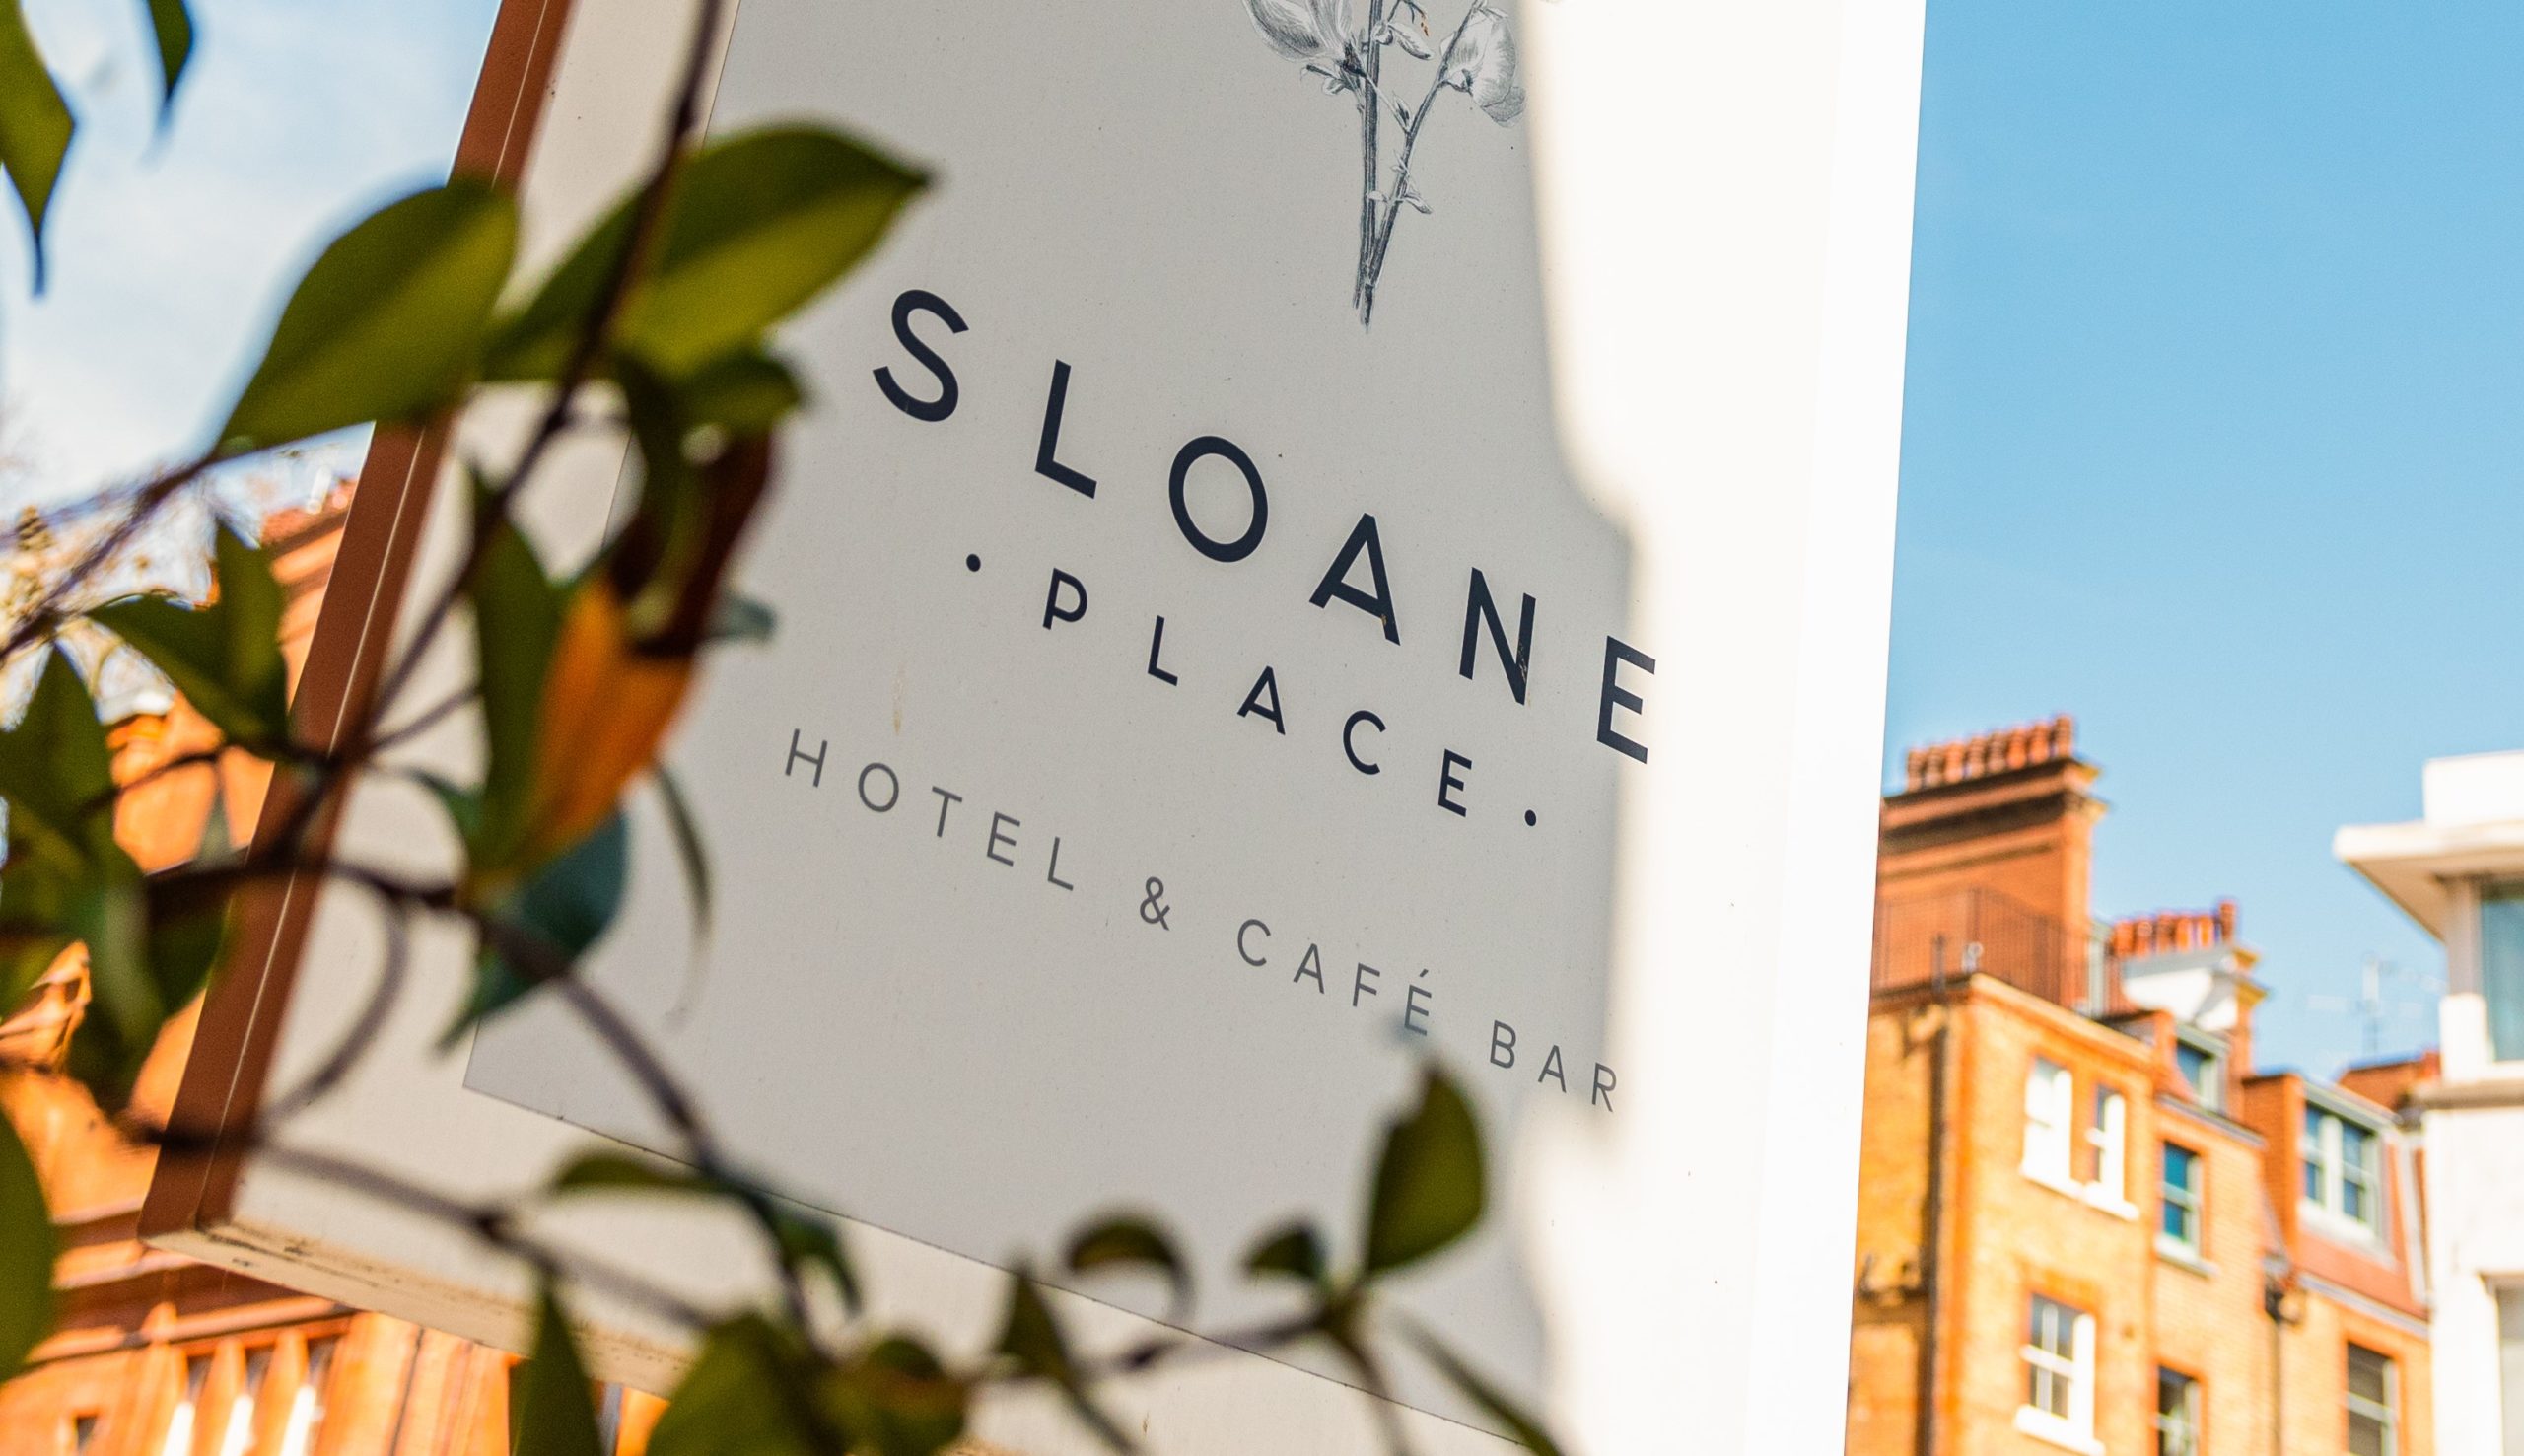 Sloane Place Hotel